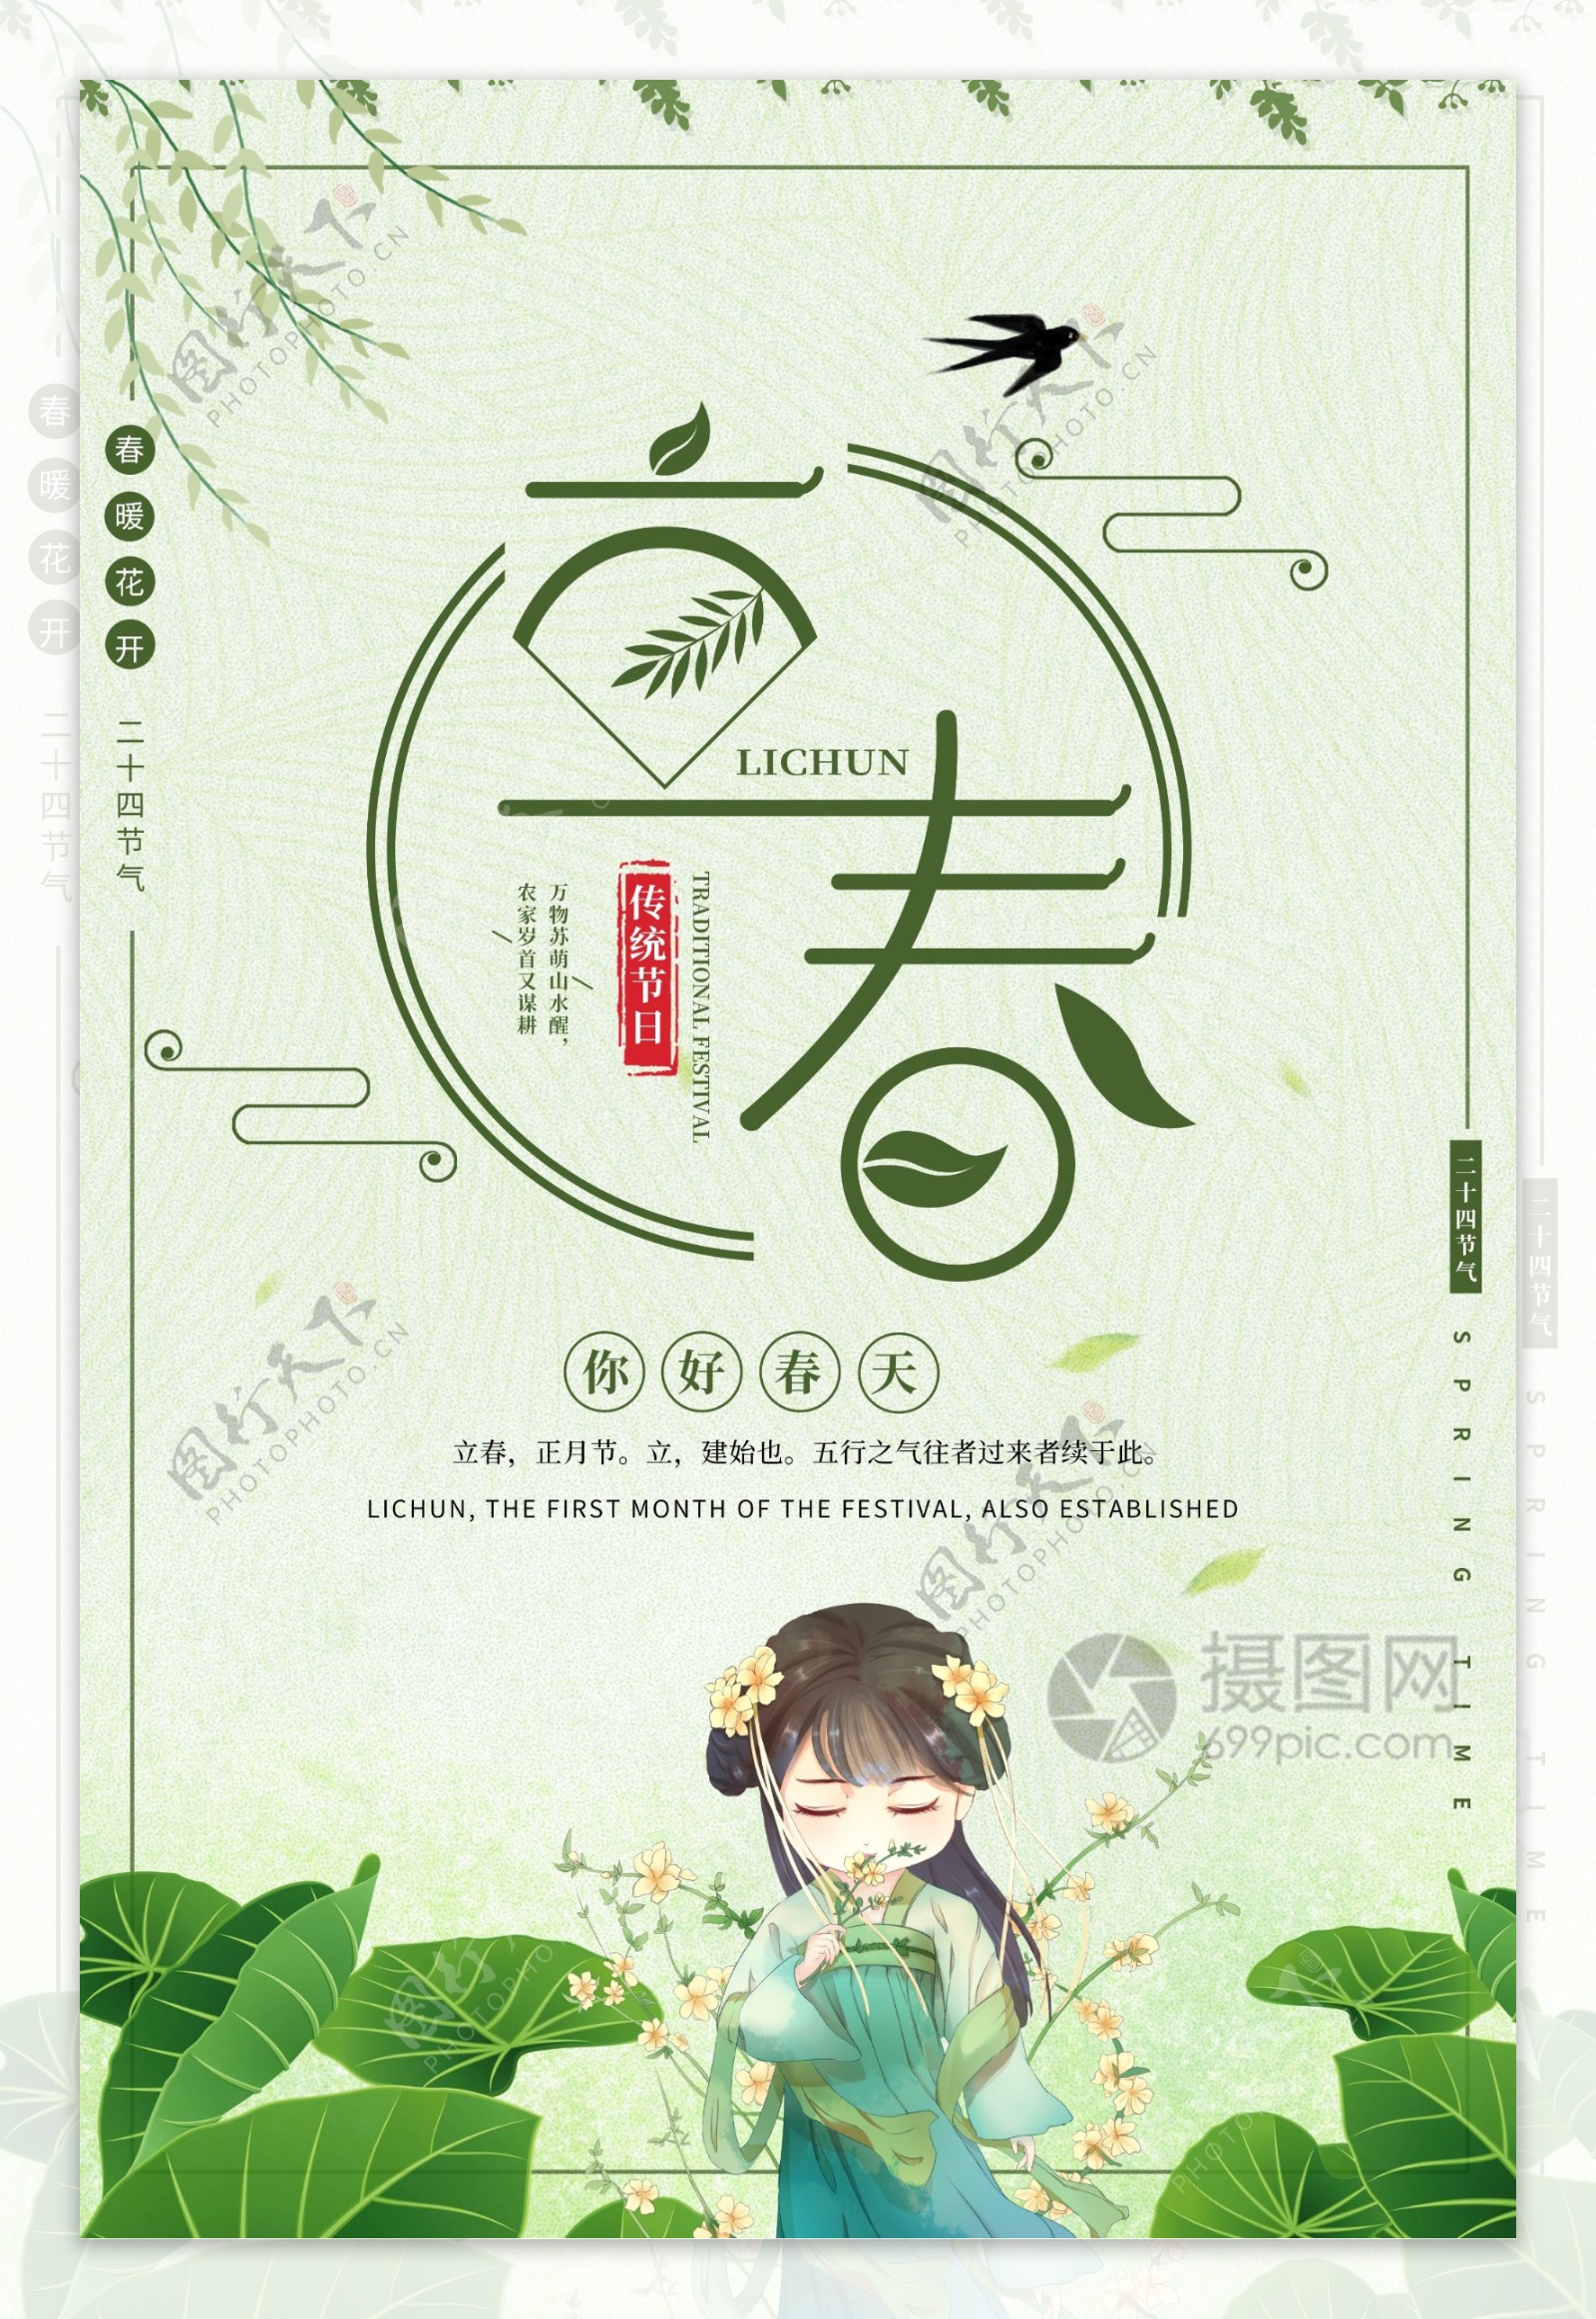 绿色复古二十四节气立春节日海报